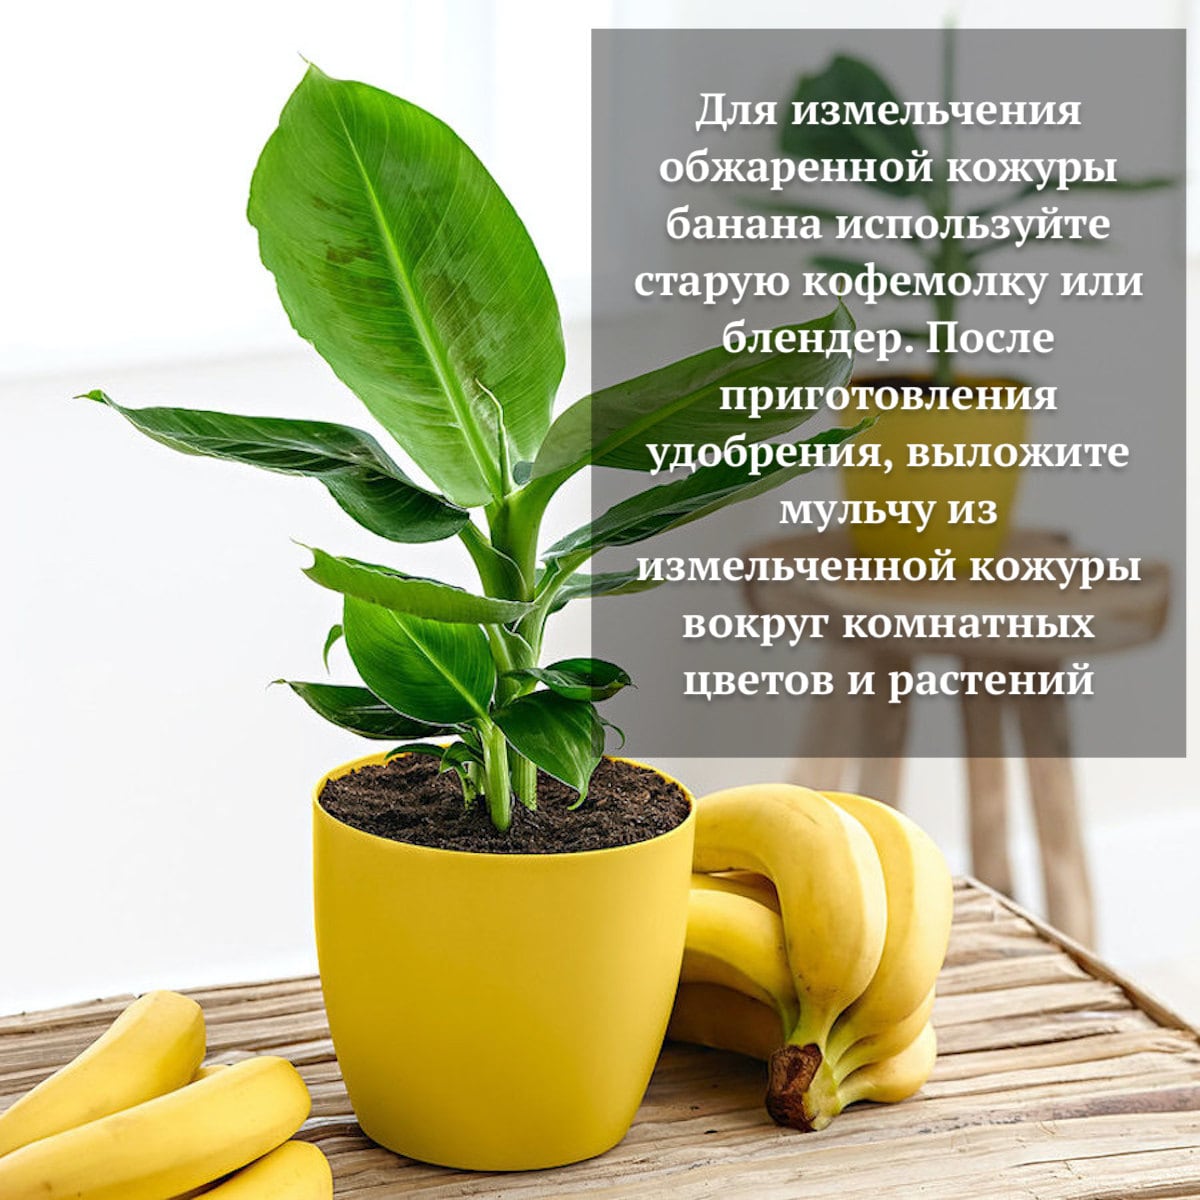 Как видите, банан полезен не только для человека, но и для растений